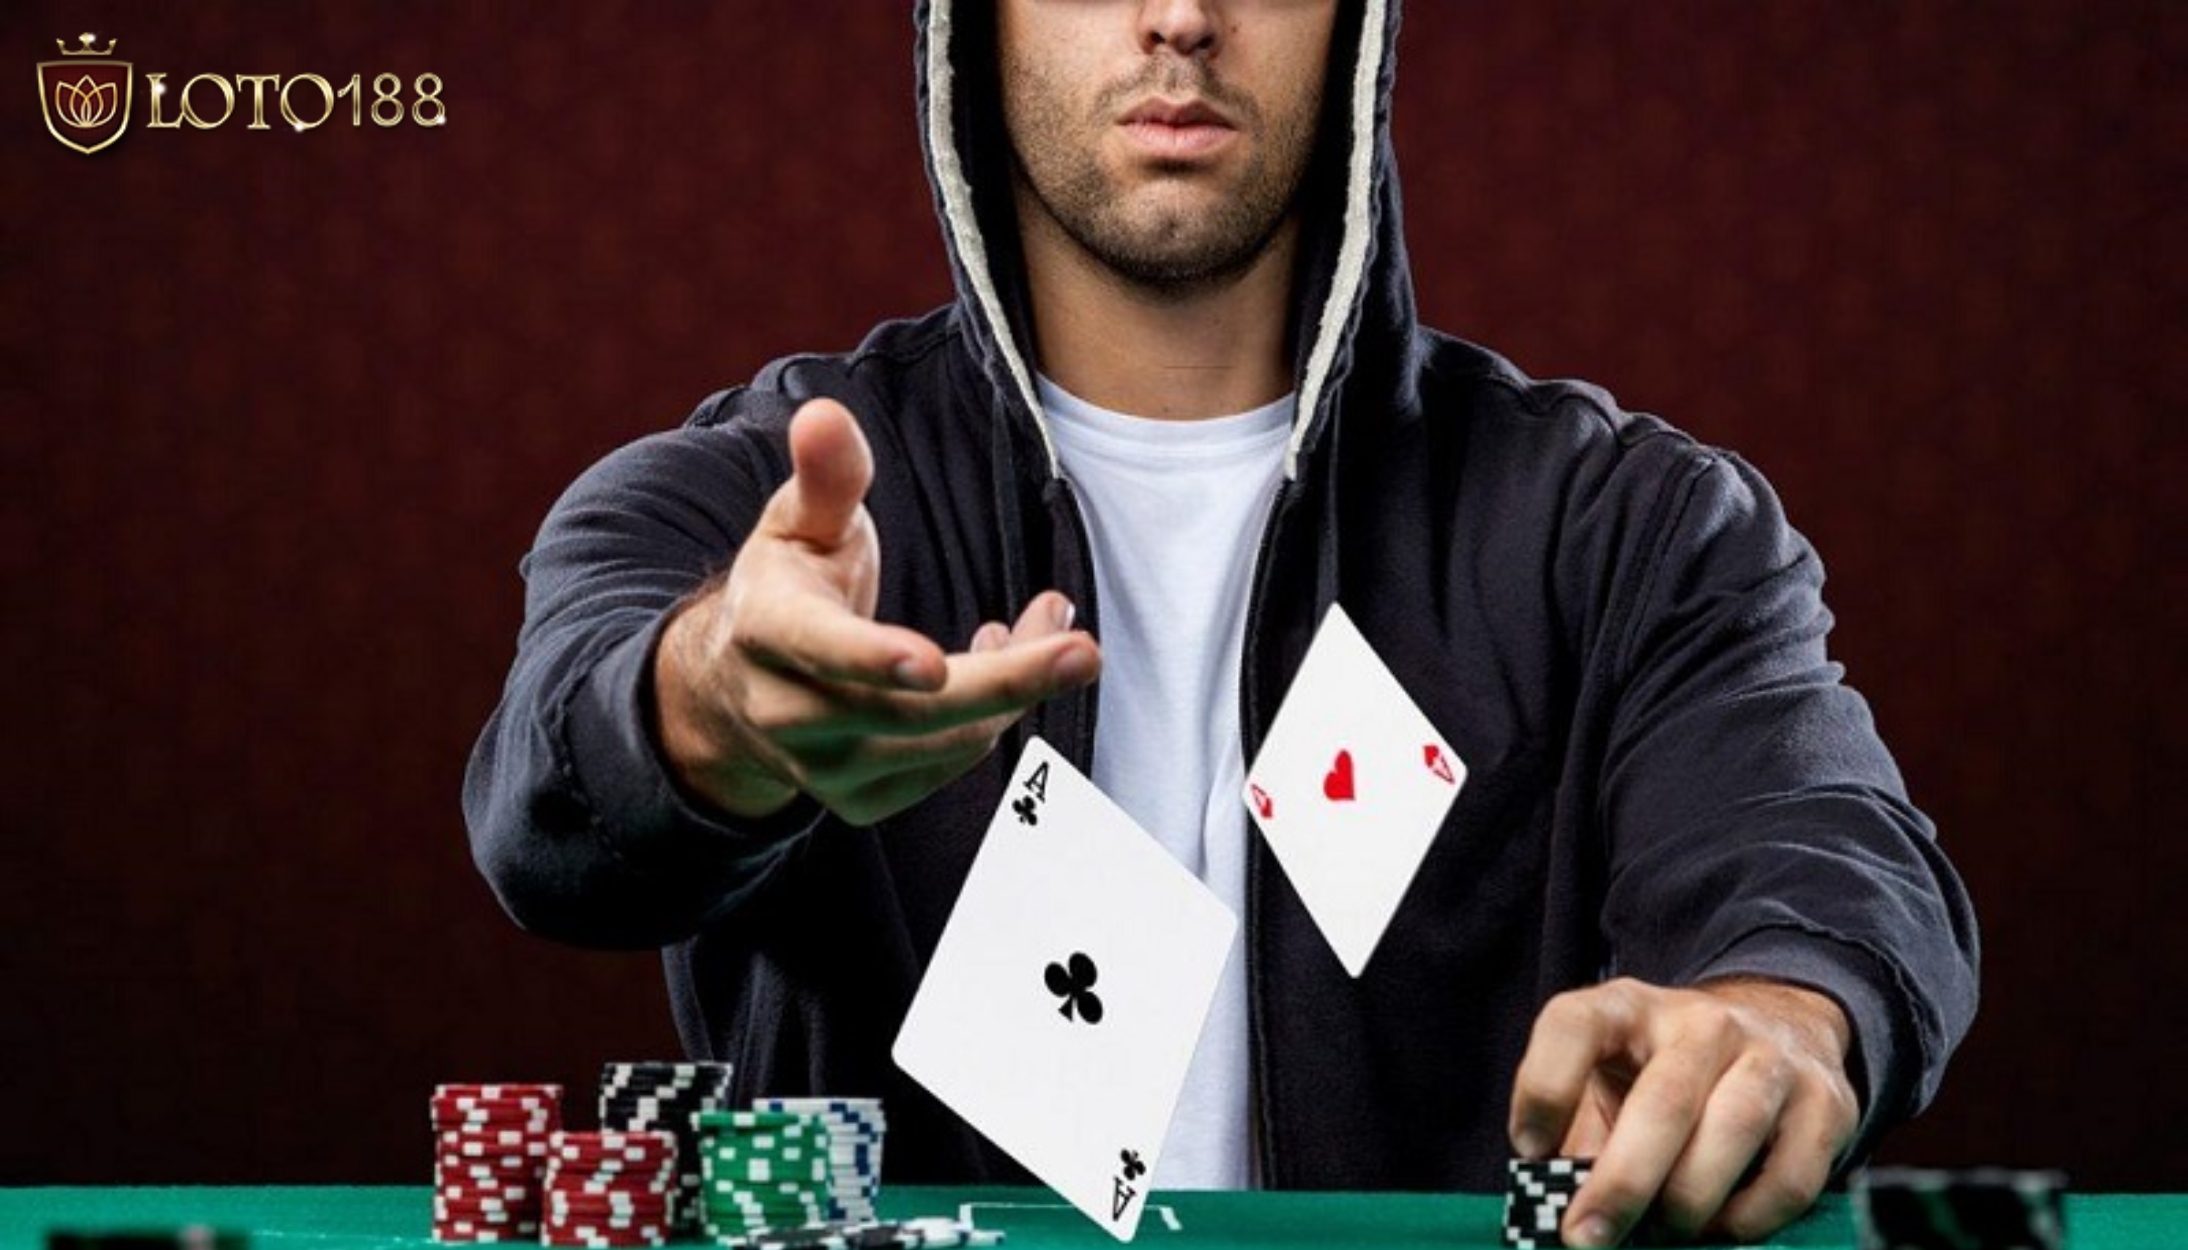 Mẹo chơi Poker là giữ vững tâm lý ổn định